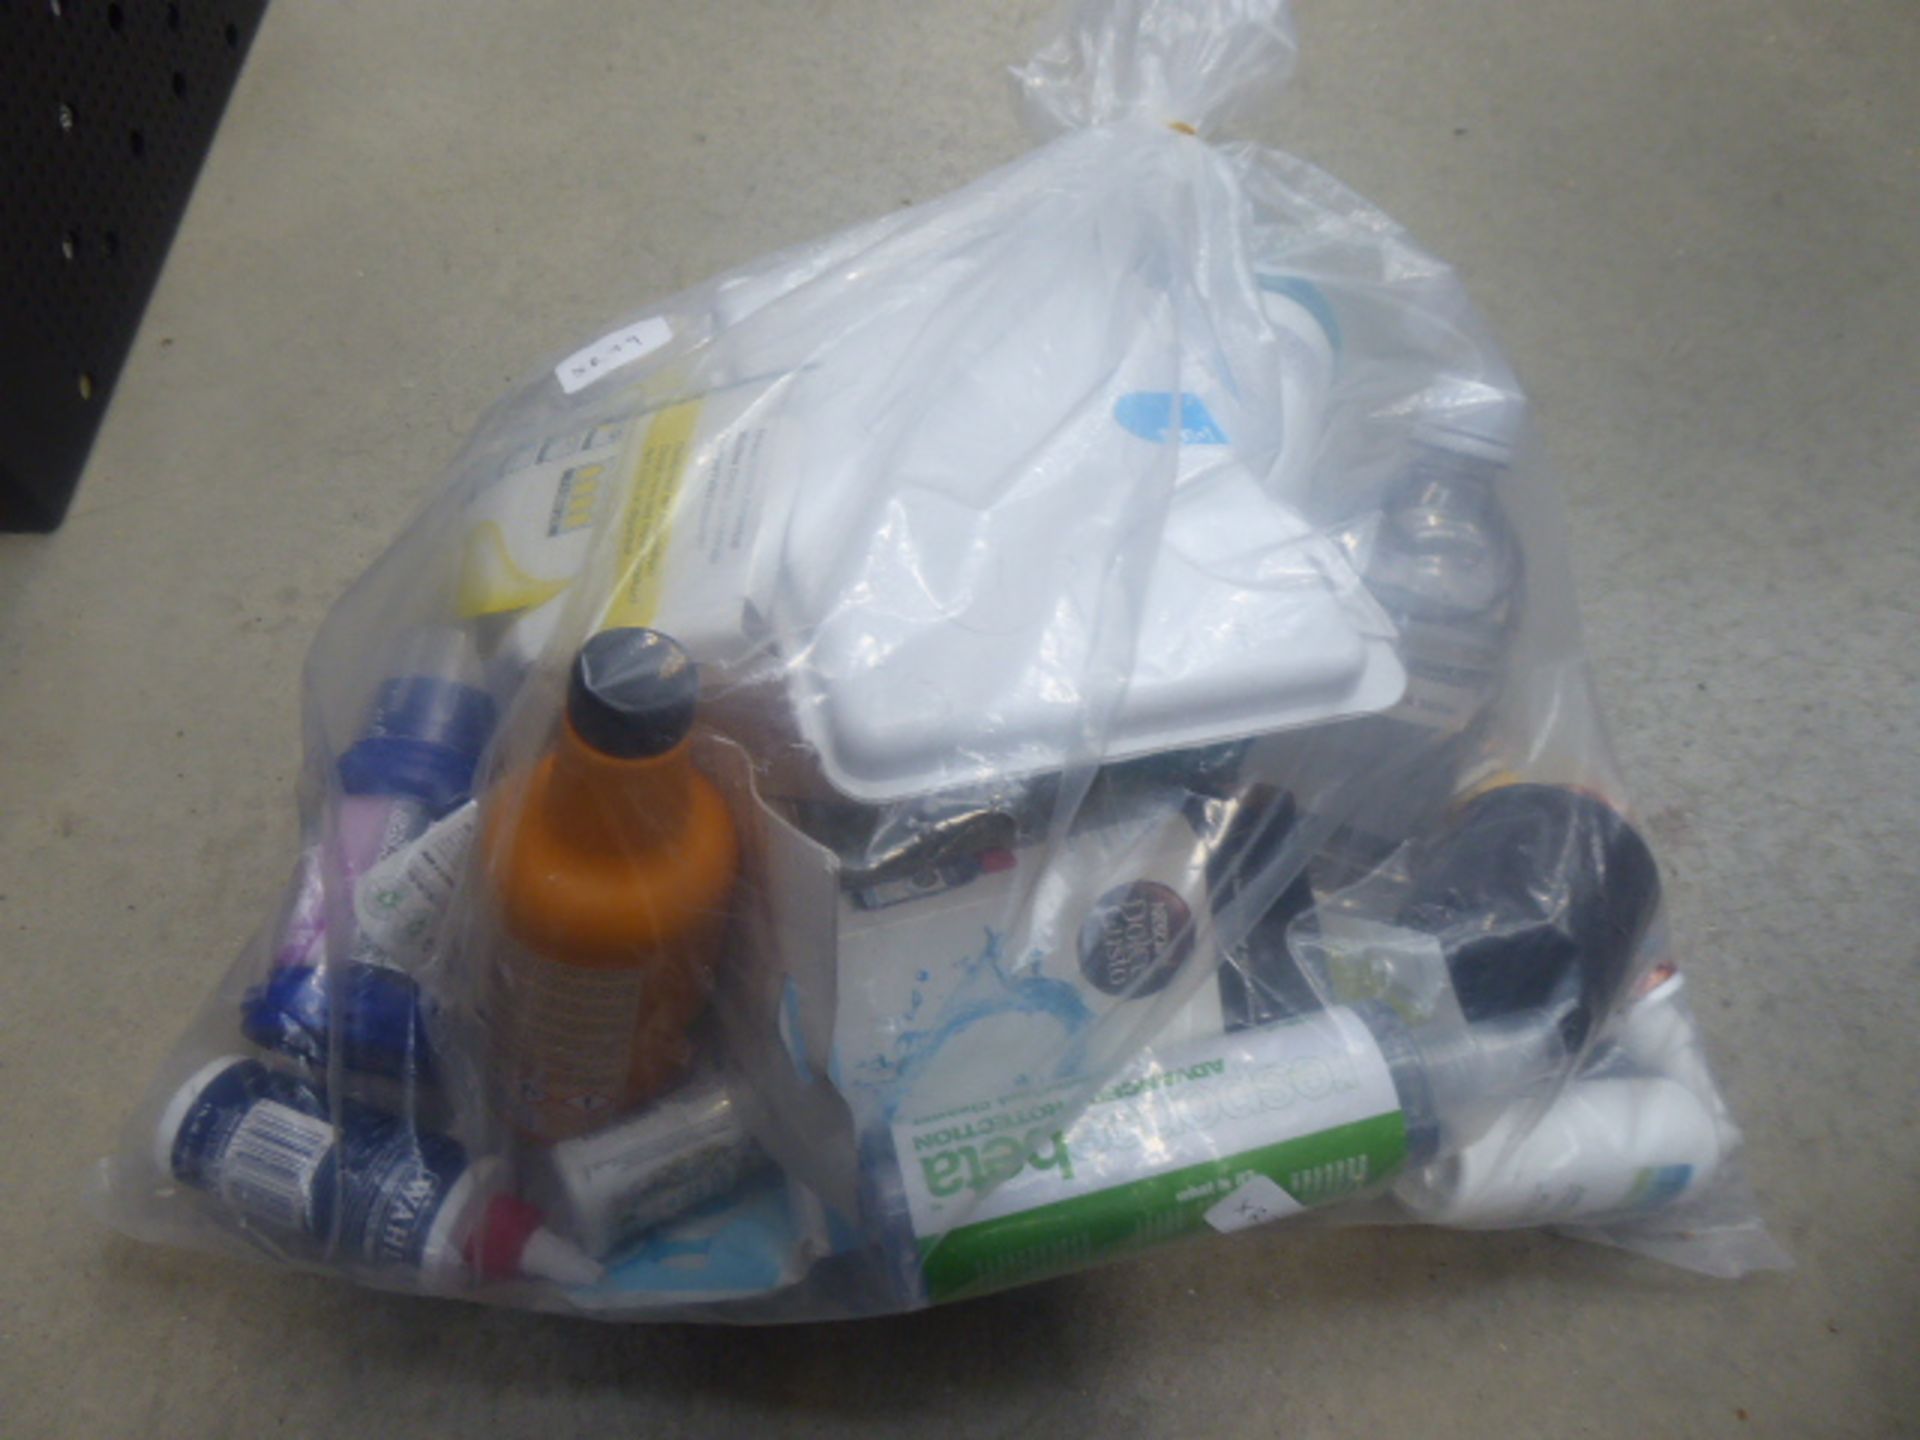 Bag of De-scaler, Karcher bottles and other glues etc